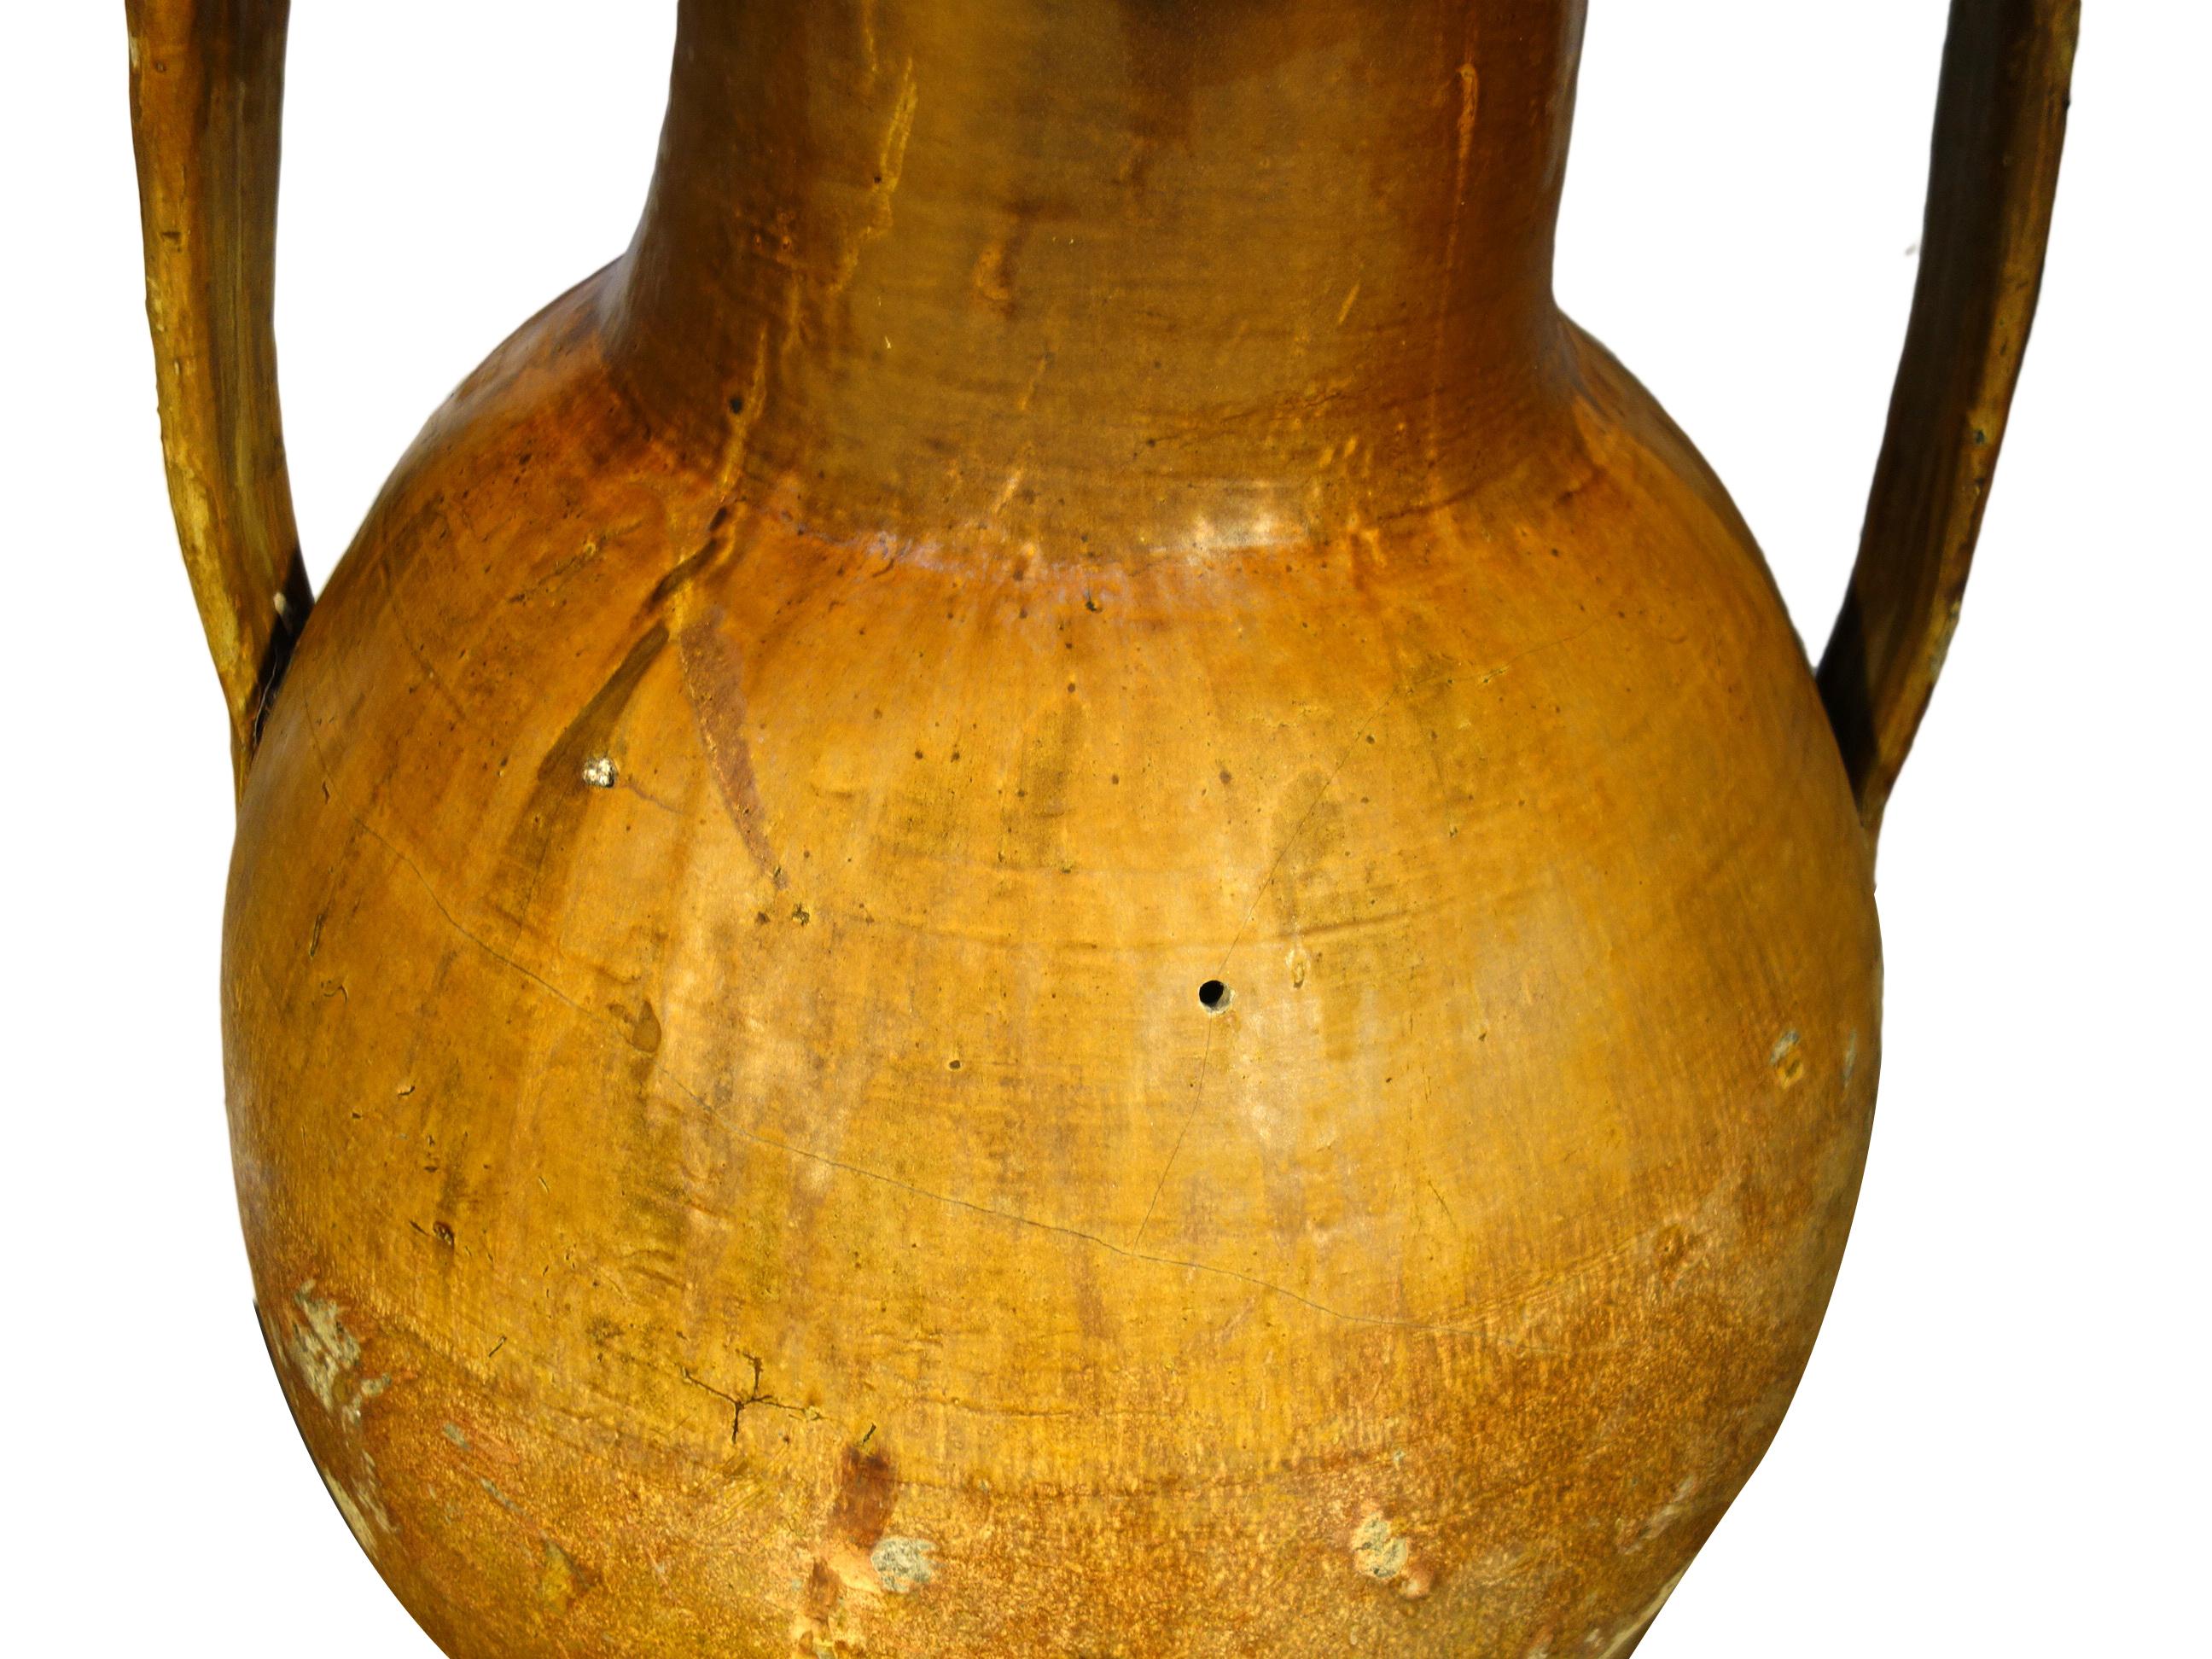 Antikes italienisches Orcio Puglia großes Terrakotta-Gefäß mit ocker- und umberfarbener Glasur.
Authentische antike Mittelmeerkeramik, zweihändige Amphora mit unterem Ausguss aus der Region Apulien in Süditalien. Handgefertigtes Steingut aus